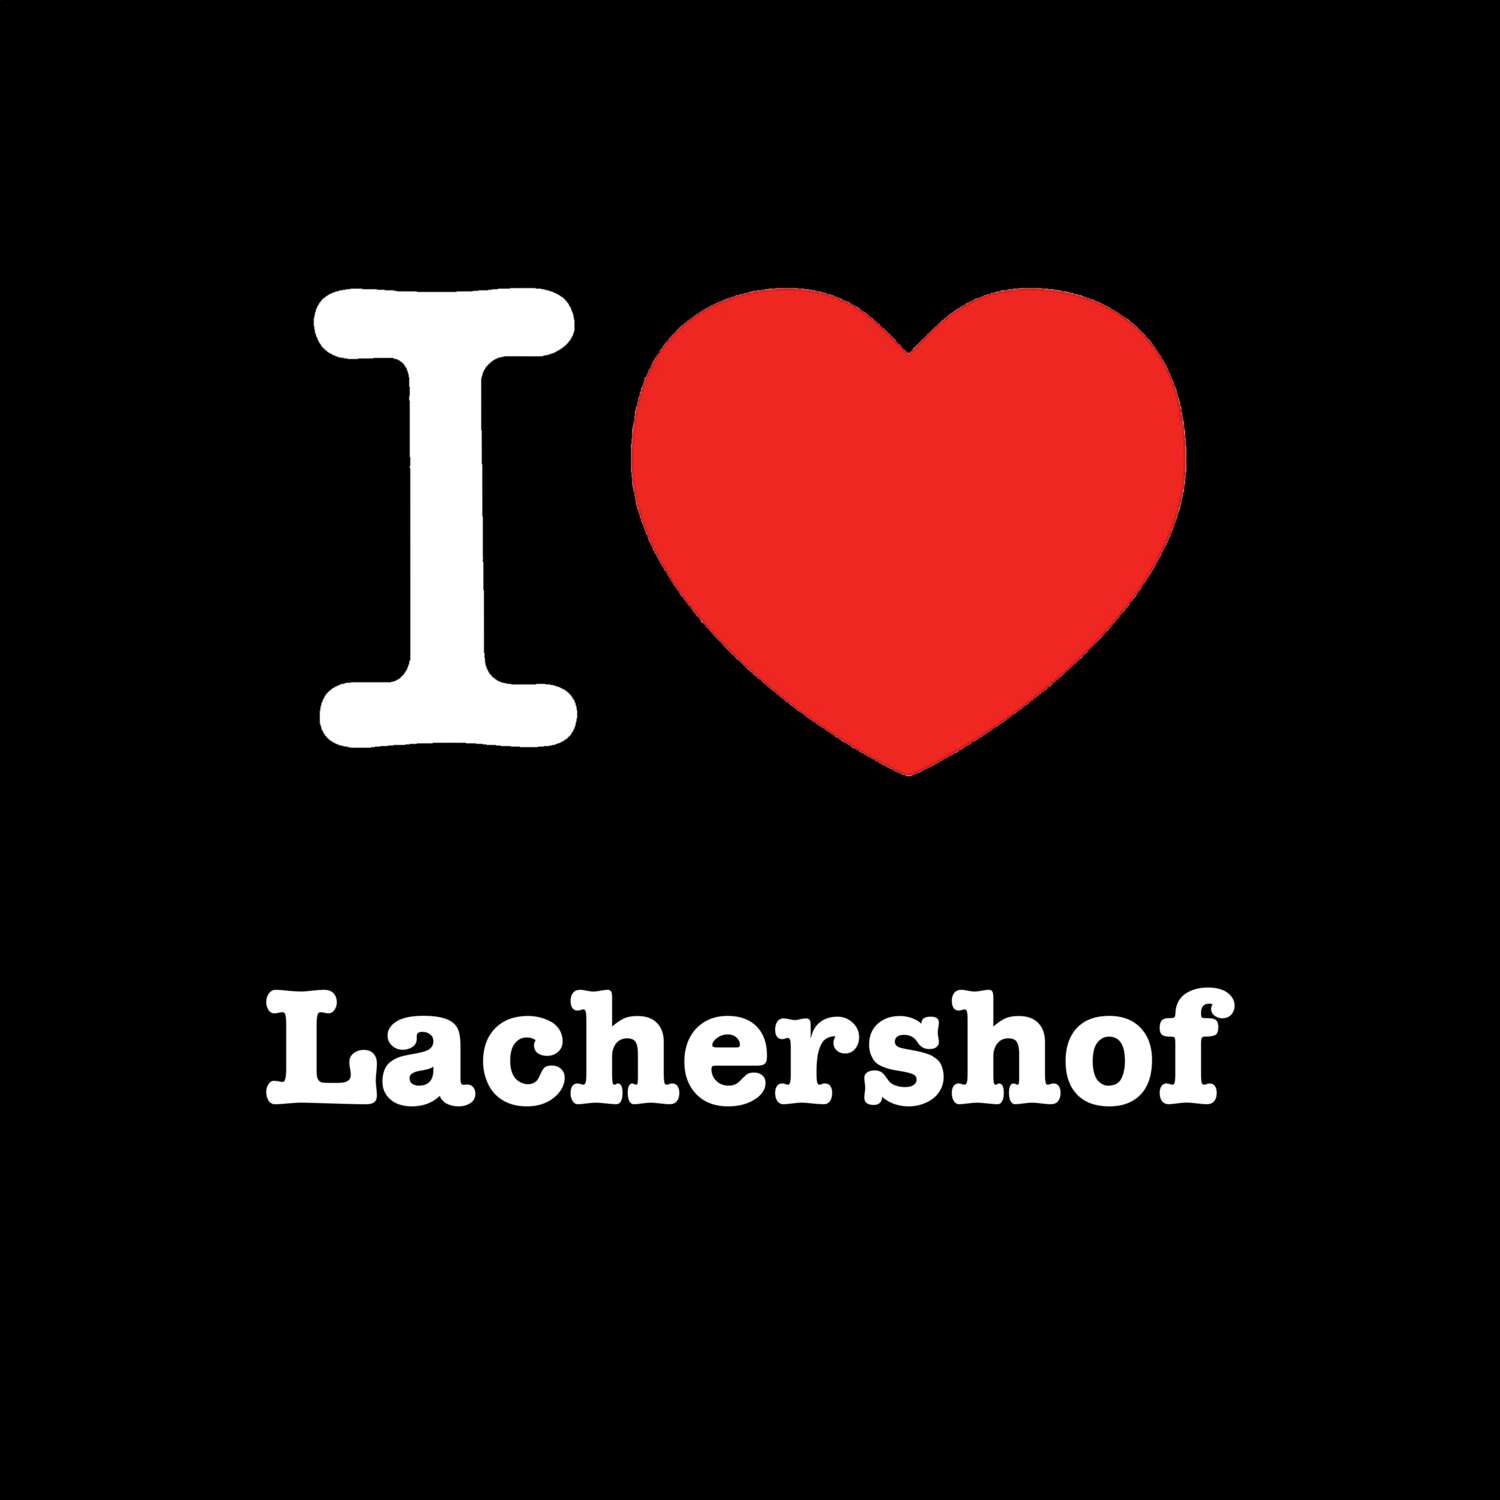 Lachershof T-Shirt »I love«